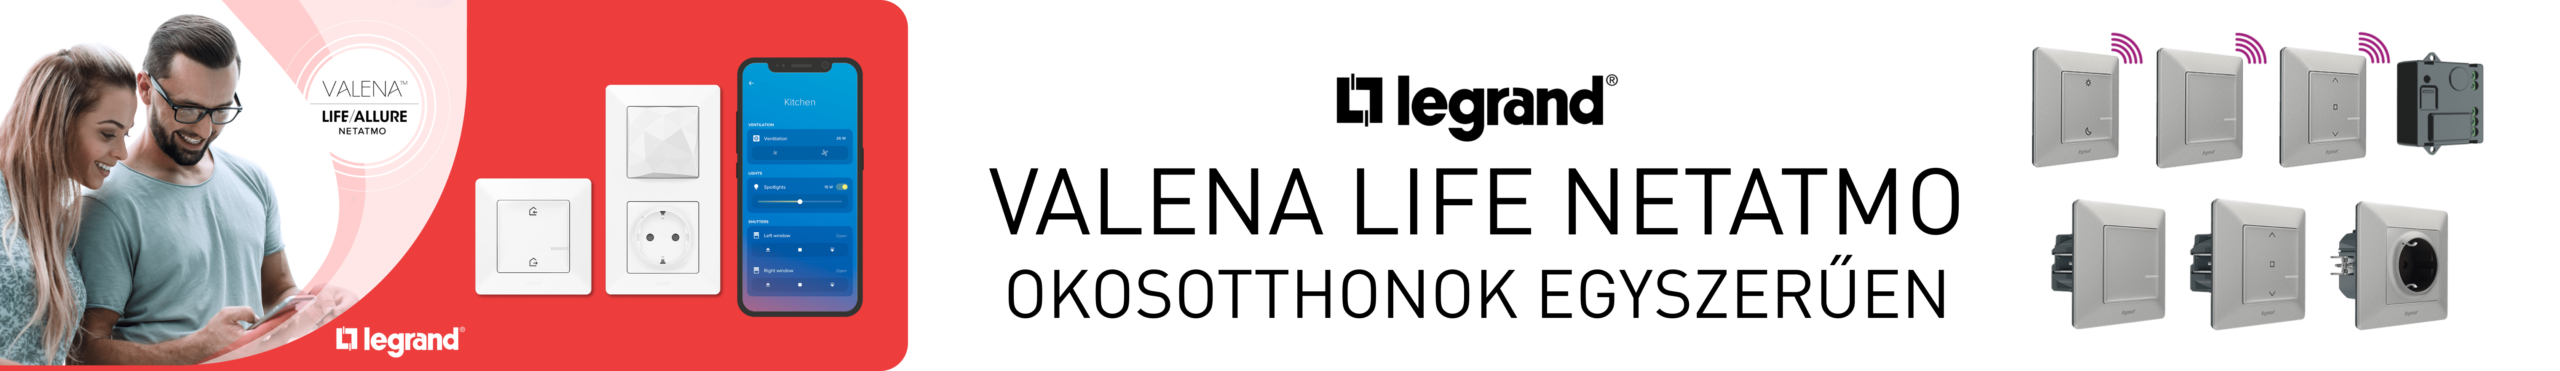 Legrand-Valena-LifeNetatmo-banner